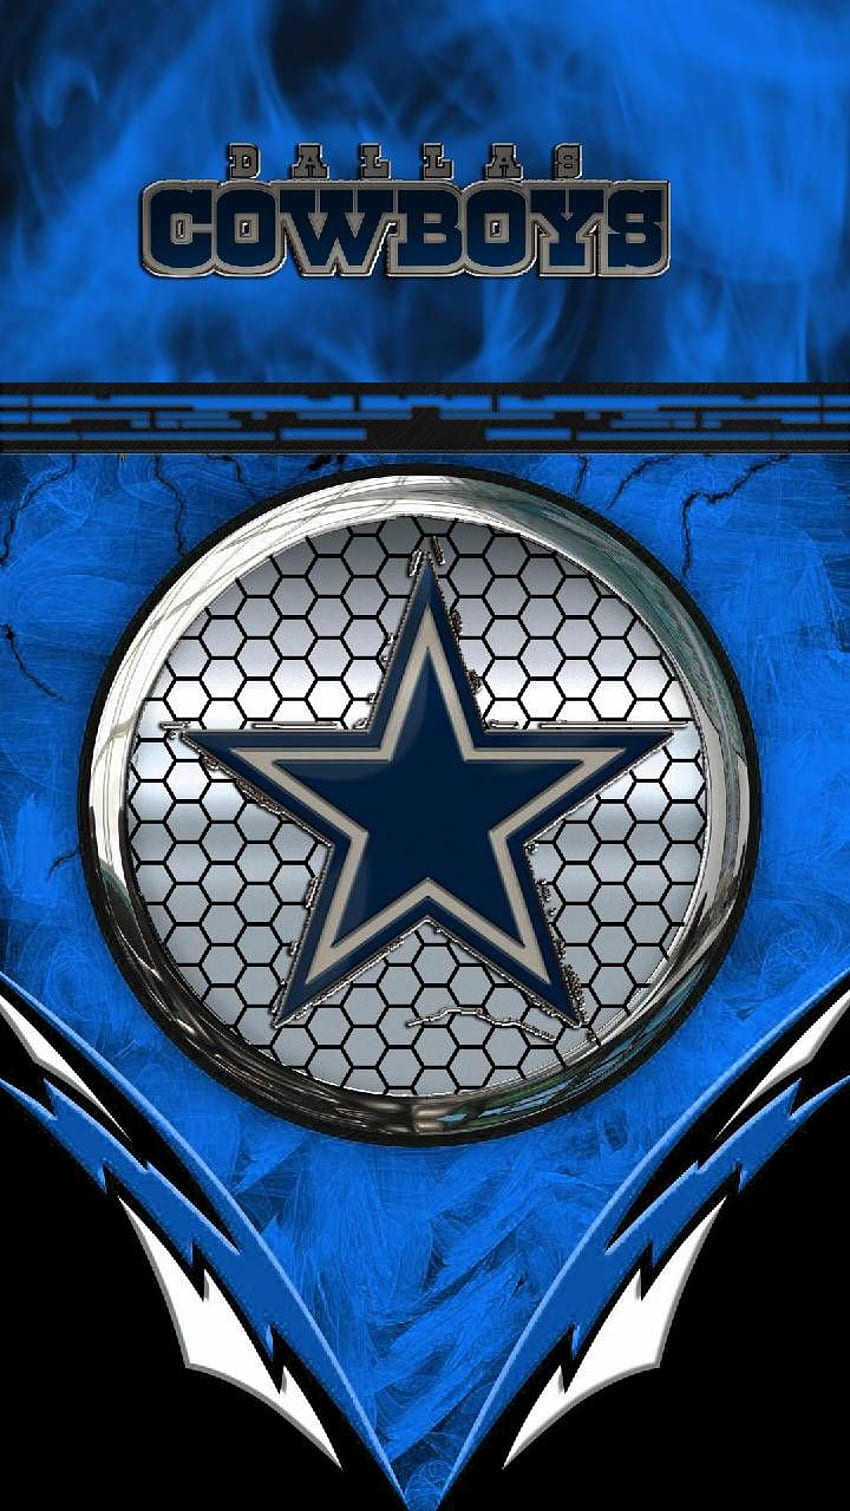 49 Dallas Cowboys Wallpaper and Screensavers  WallpaperSafari